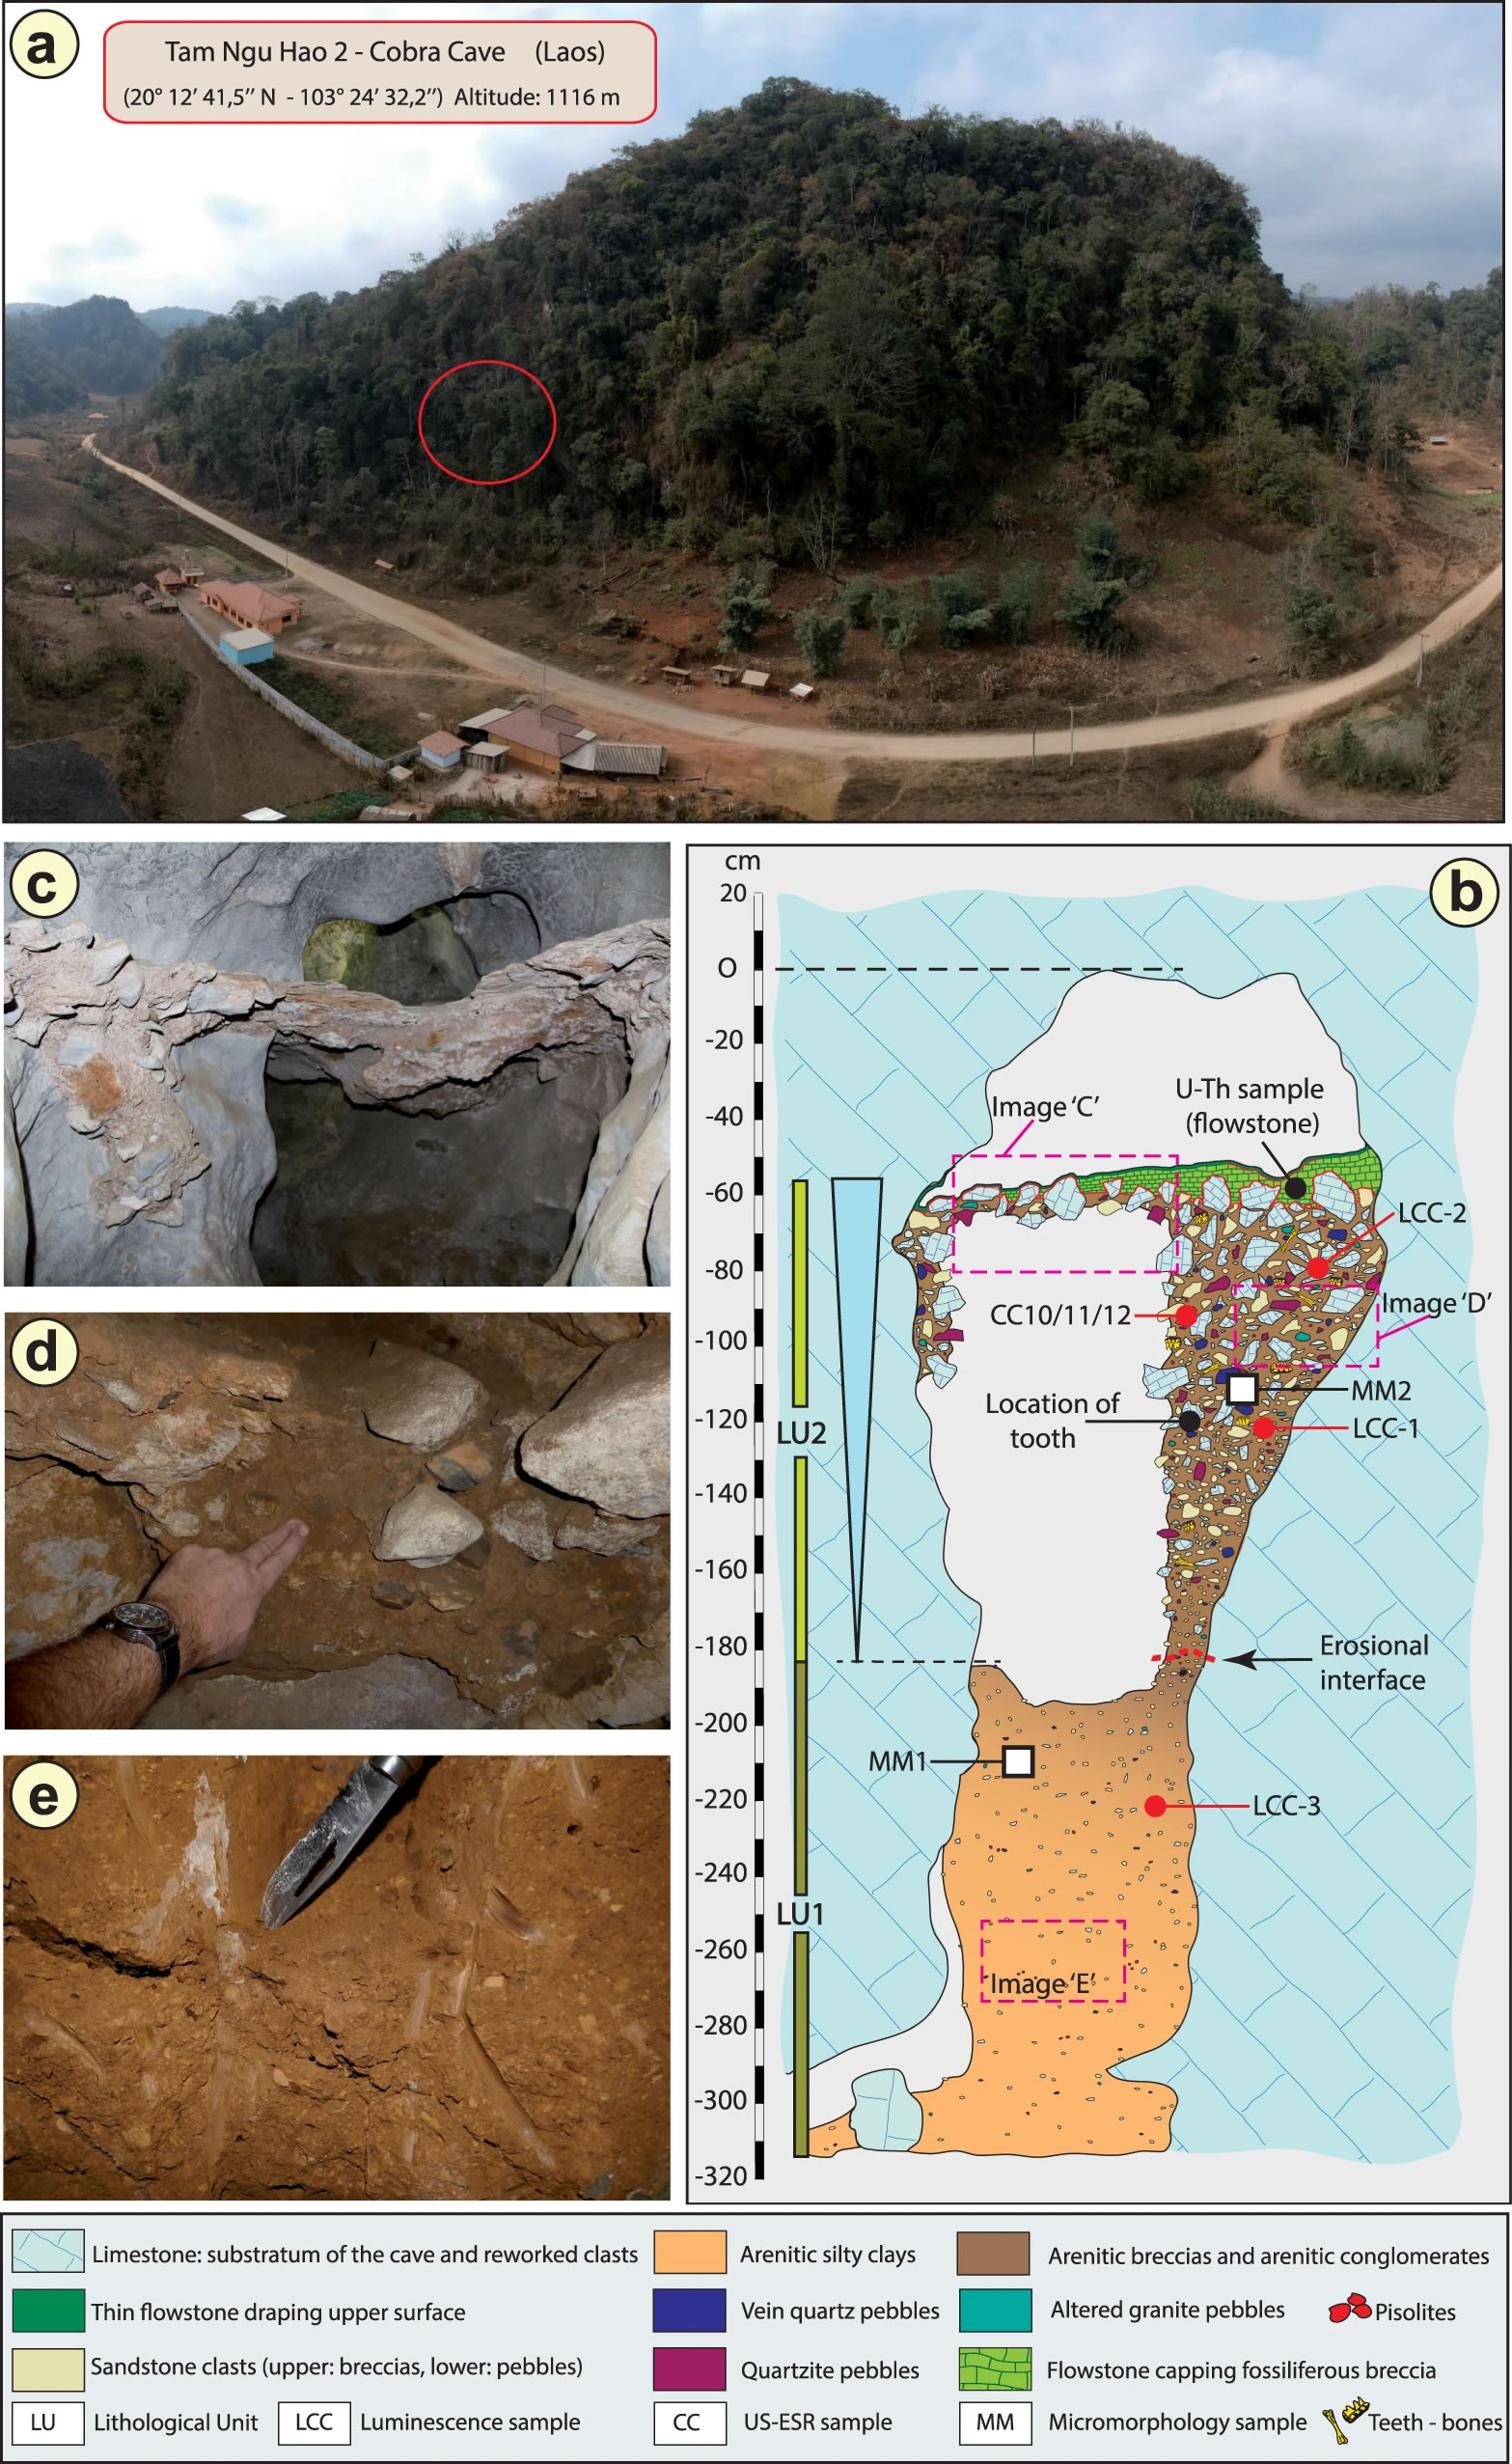 老挝Tam Ngu Hao 2洞穴发现更新世中期古人类臼齿 可能来自年轻的女性丹尼索瓦人